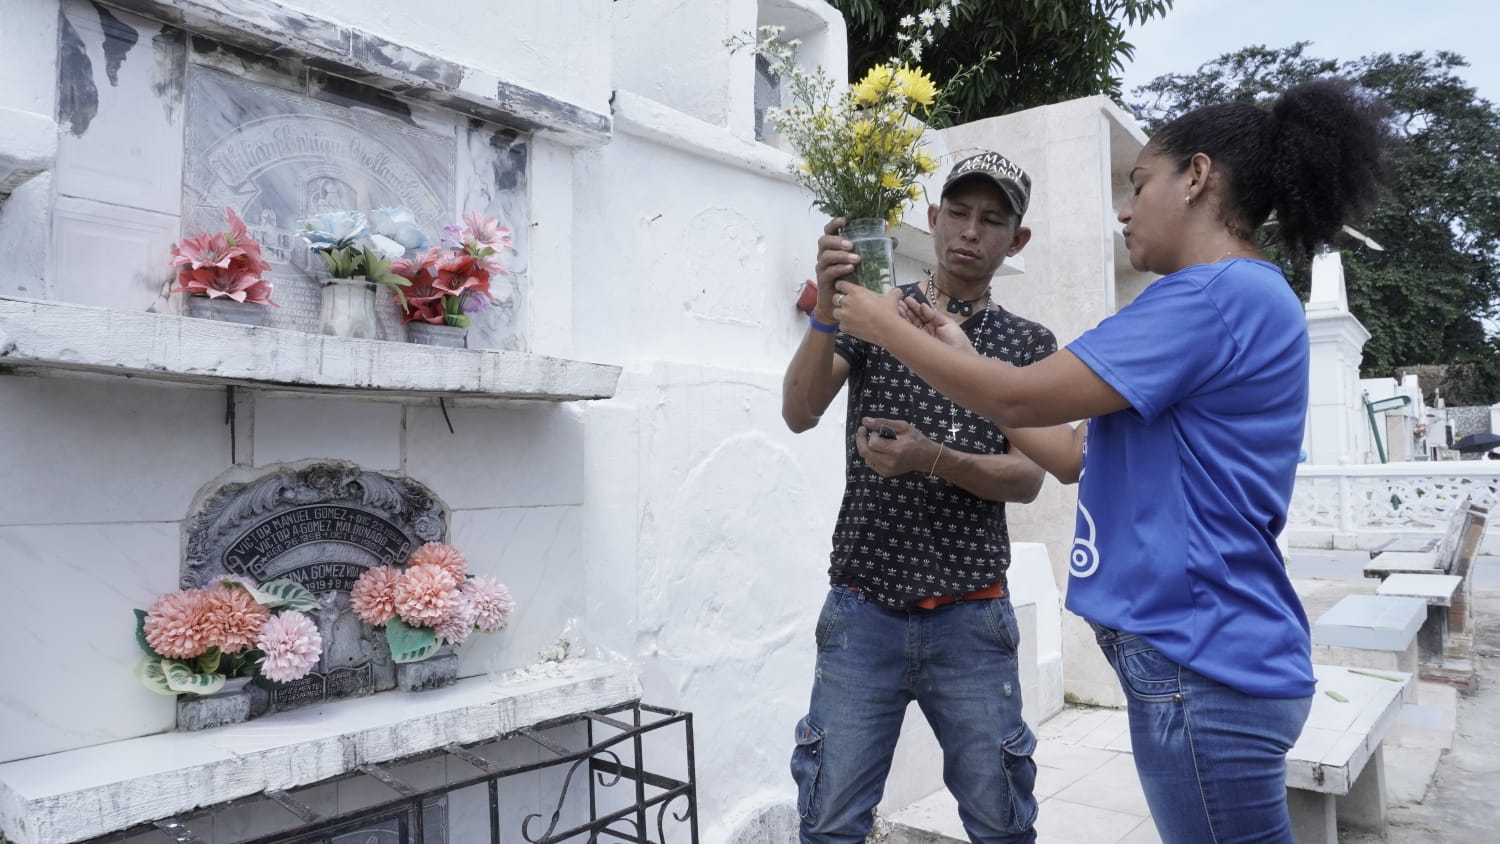 Secretaría de Salud del Atlántico promueve la eliminación de floreros con agua en cementerios para prevenir el dengue